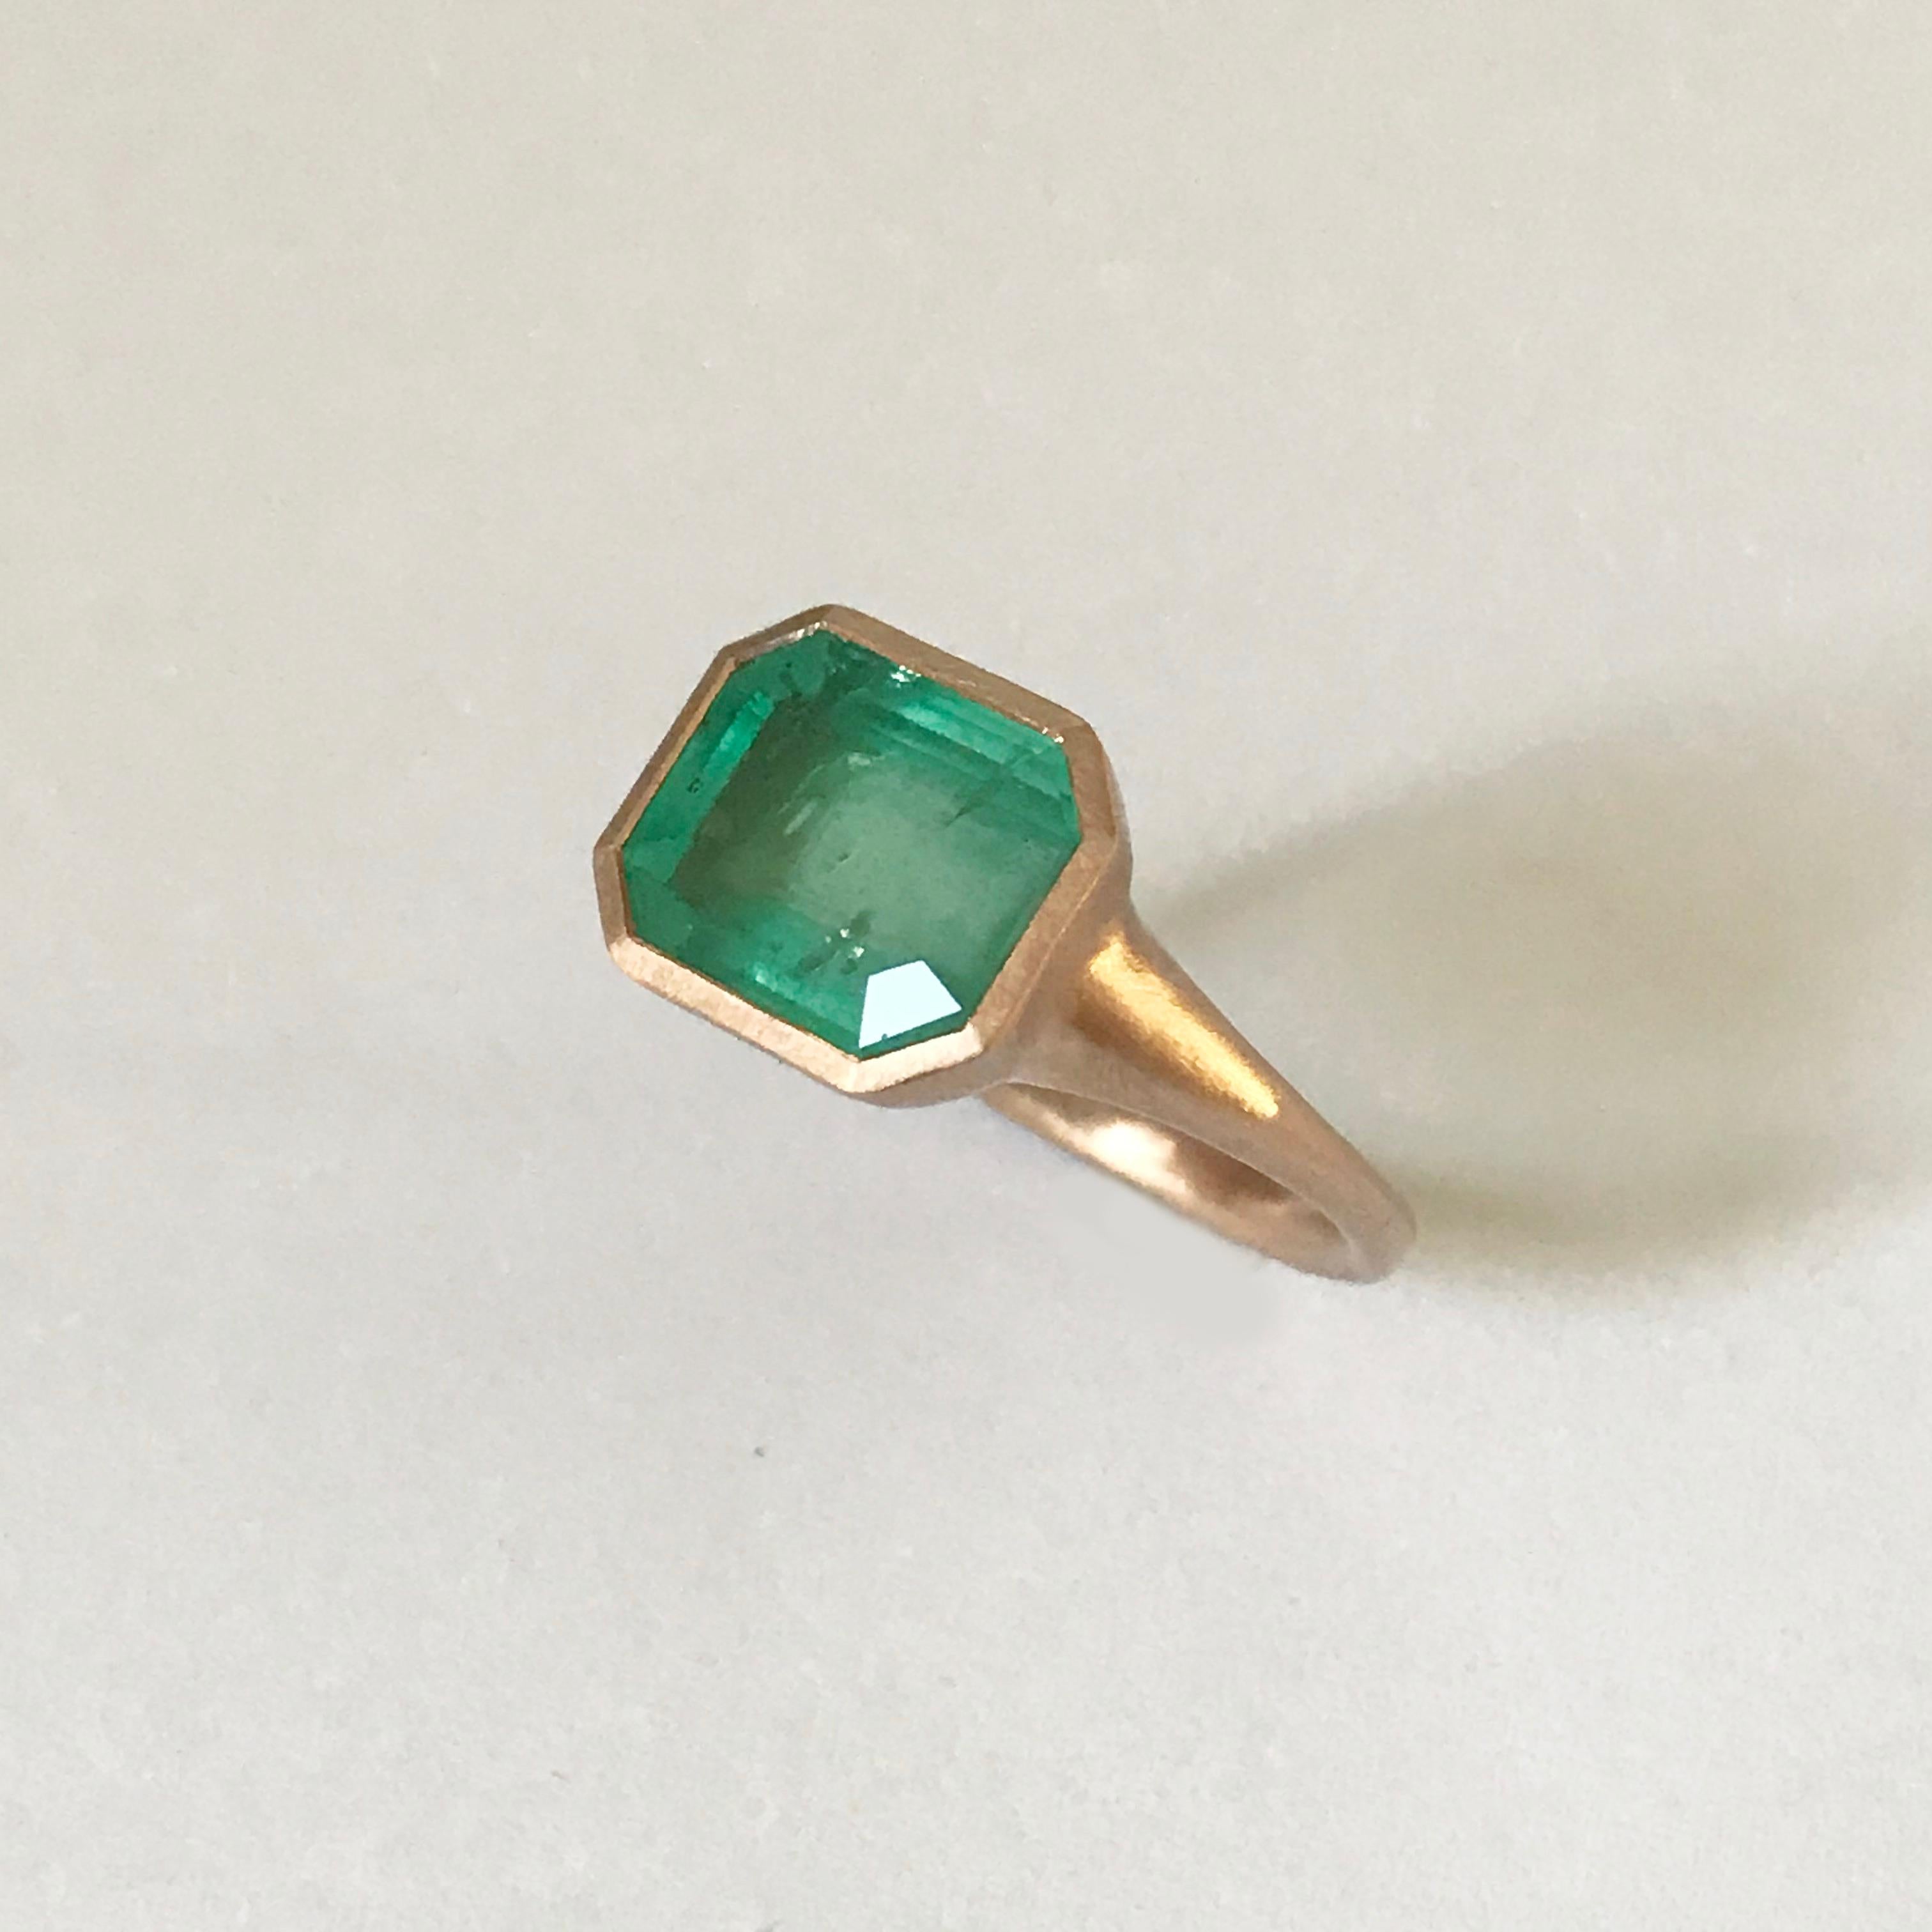 Dalben 4, 10 Carat Emerald Rose Gold Ring 6